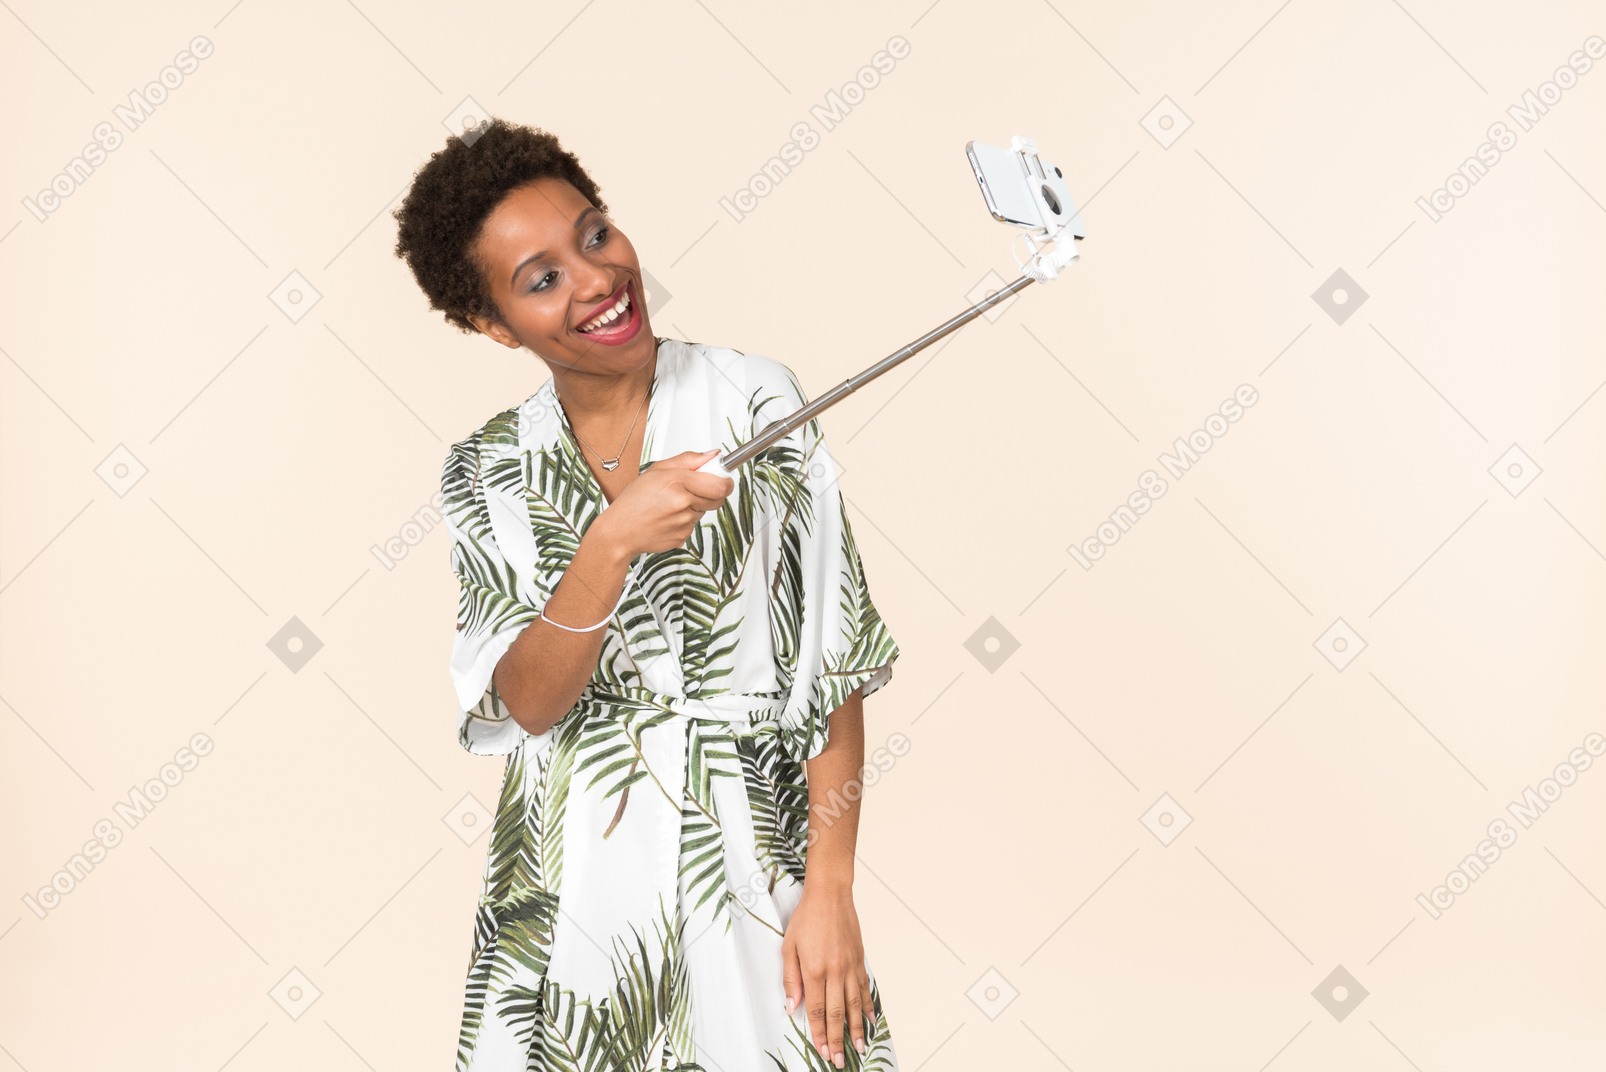 Смеющаяся взрослая афро женщина делает селфи с селфи